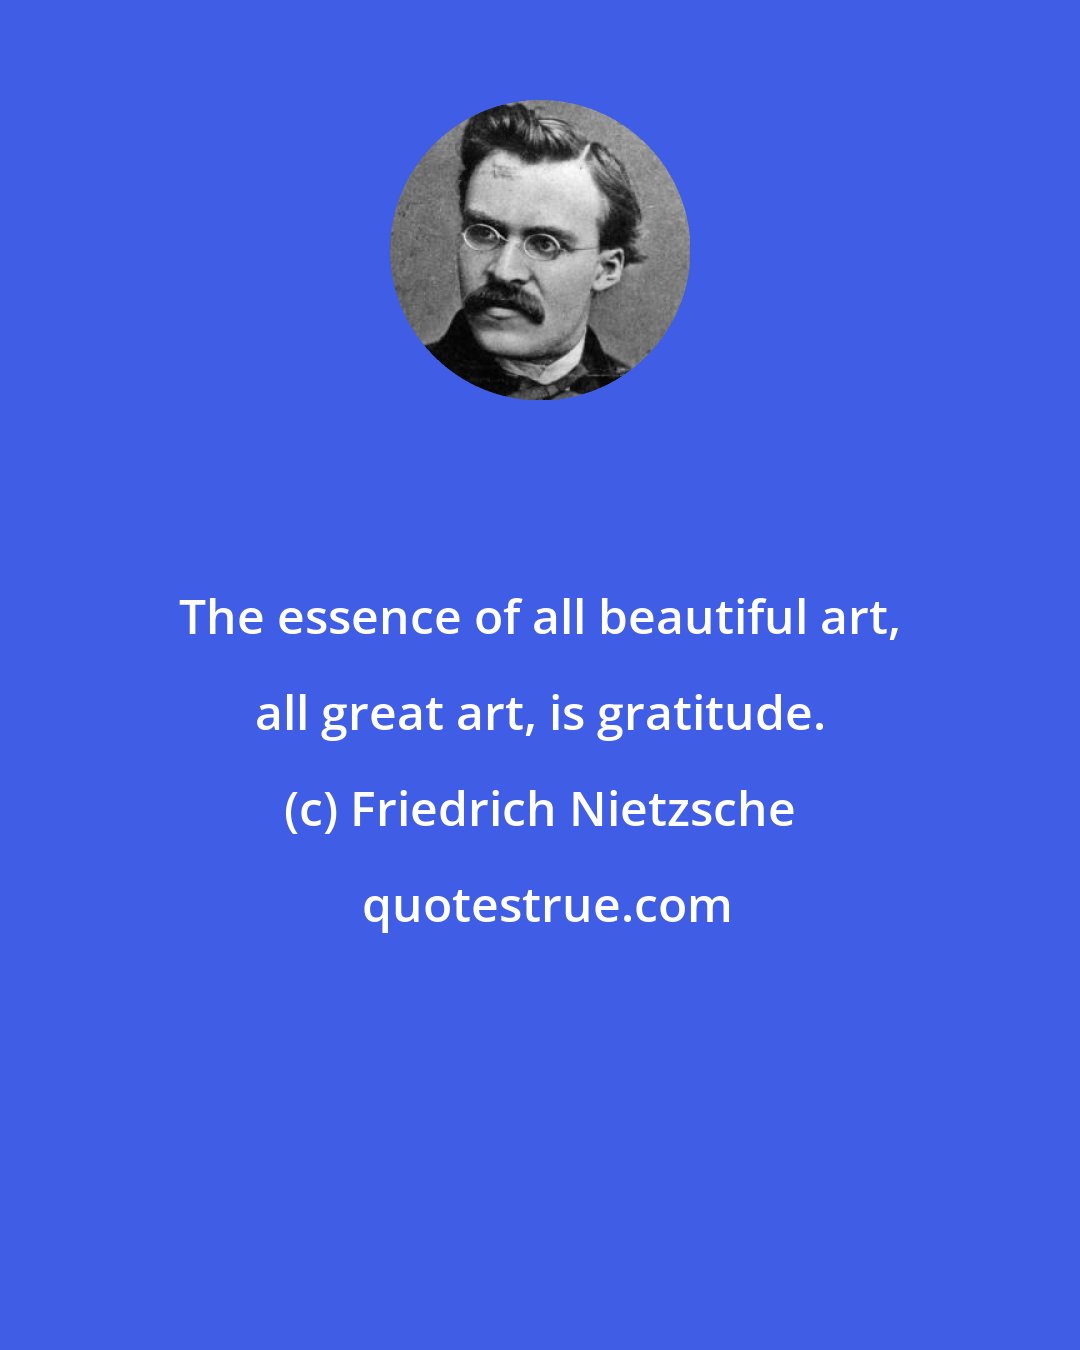 Friedrich Nietzsche: The essence of all beautiful art, all great art, is gratitude.